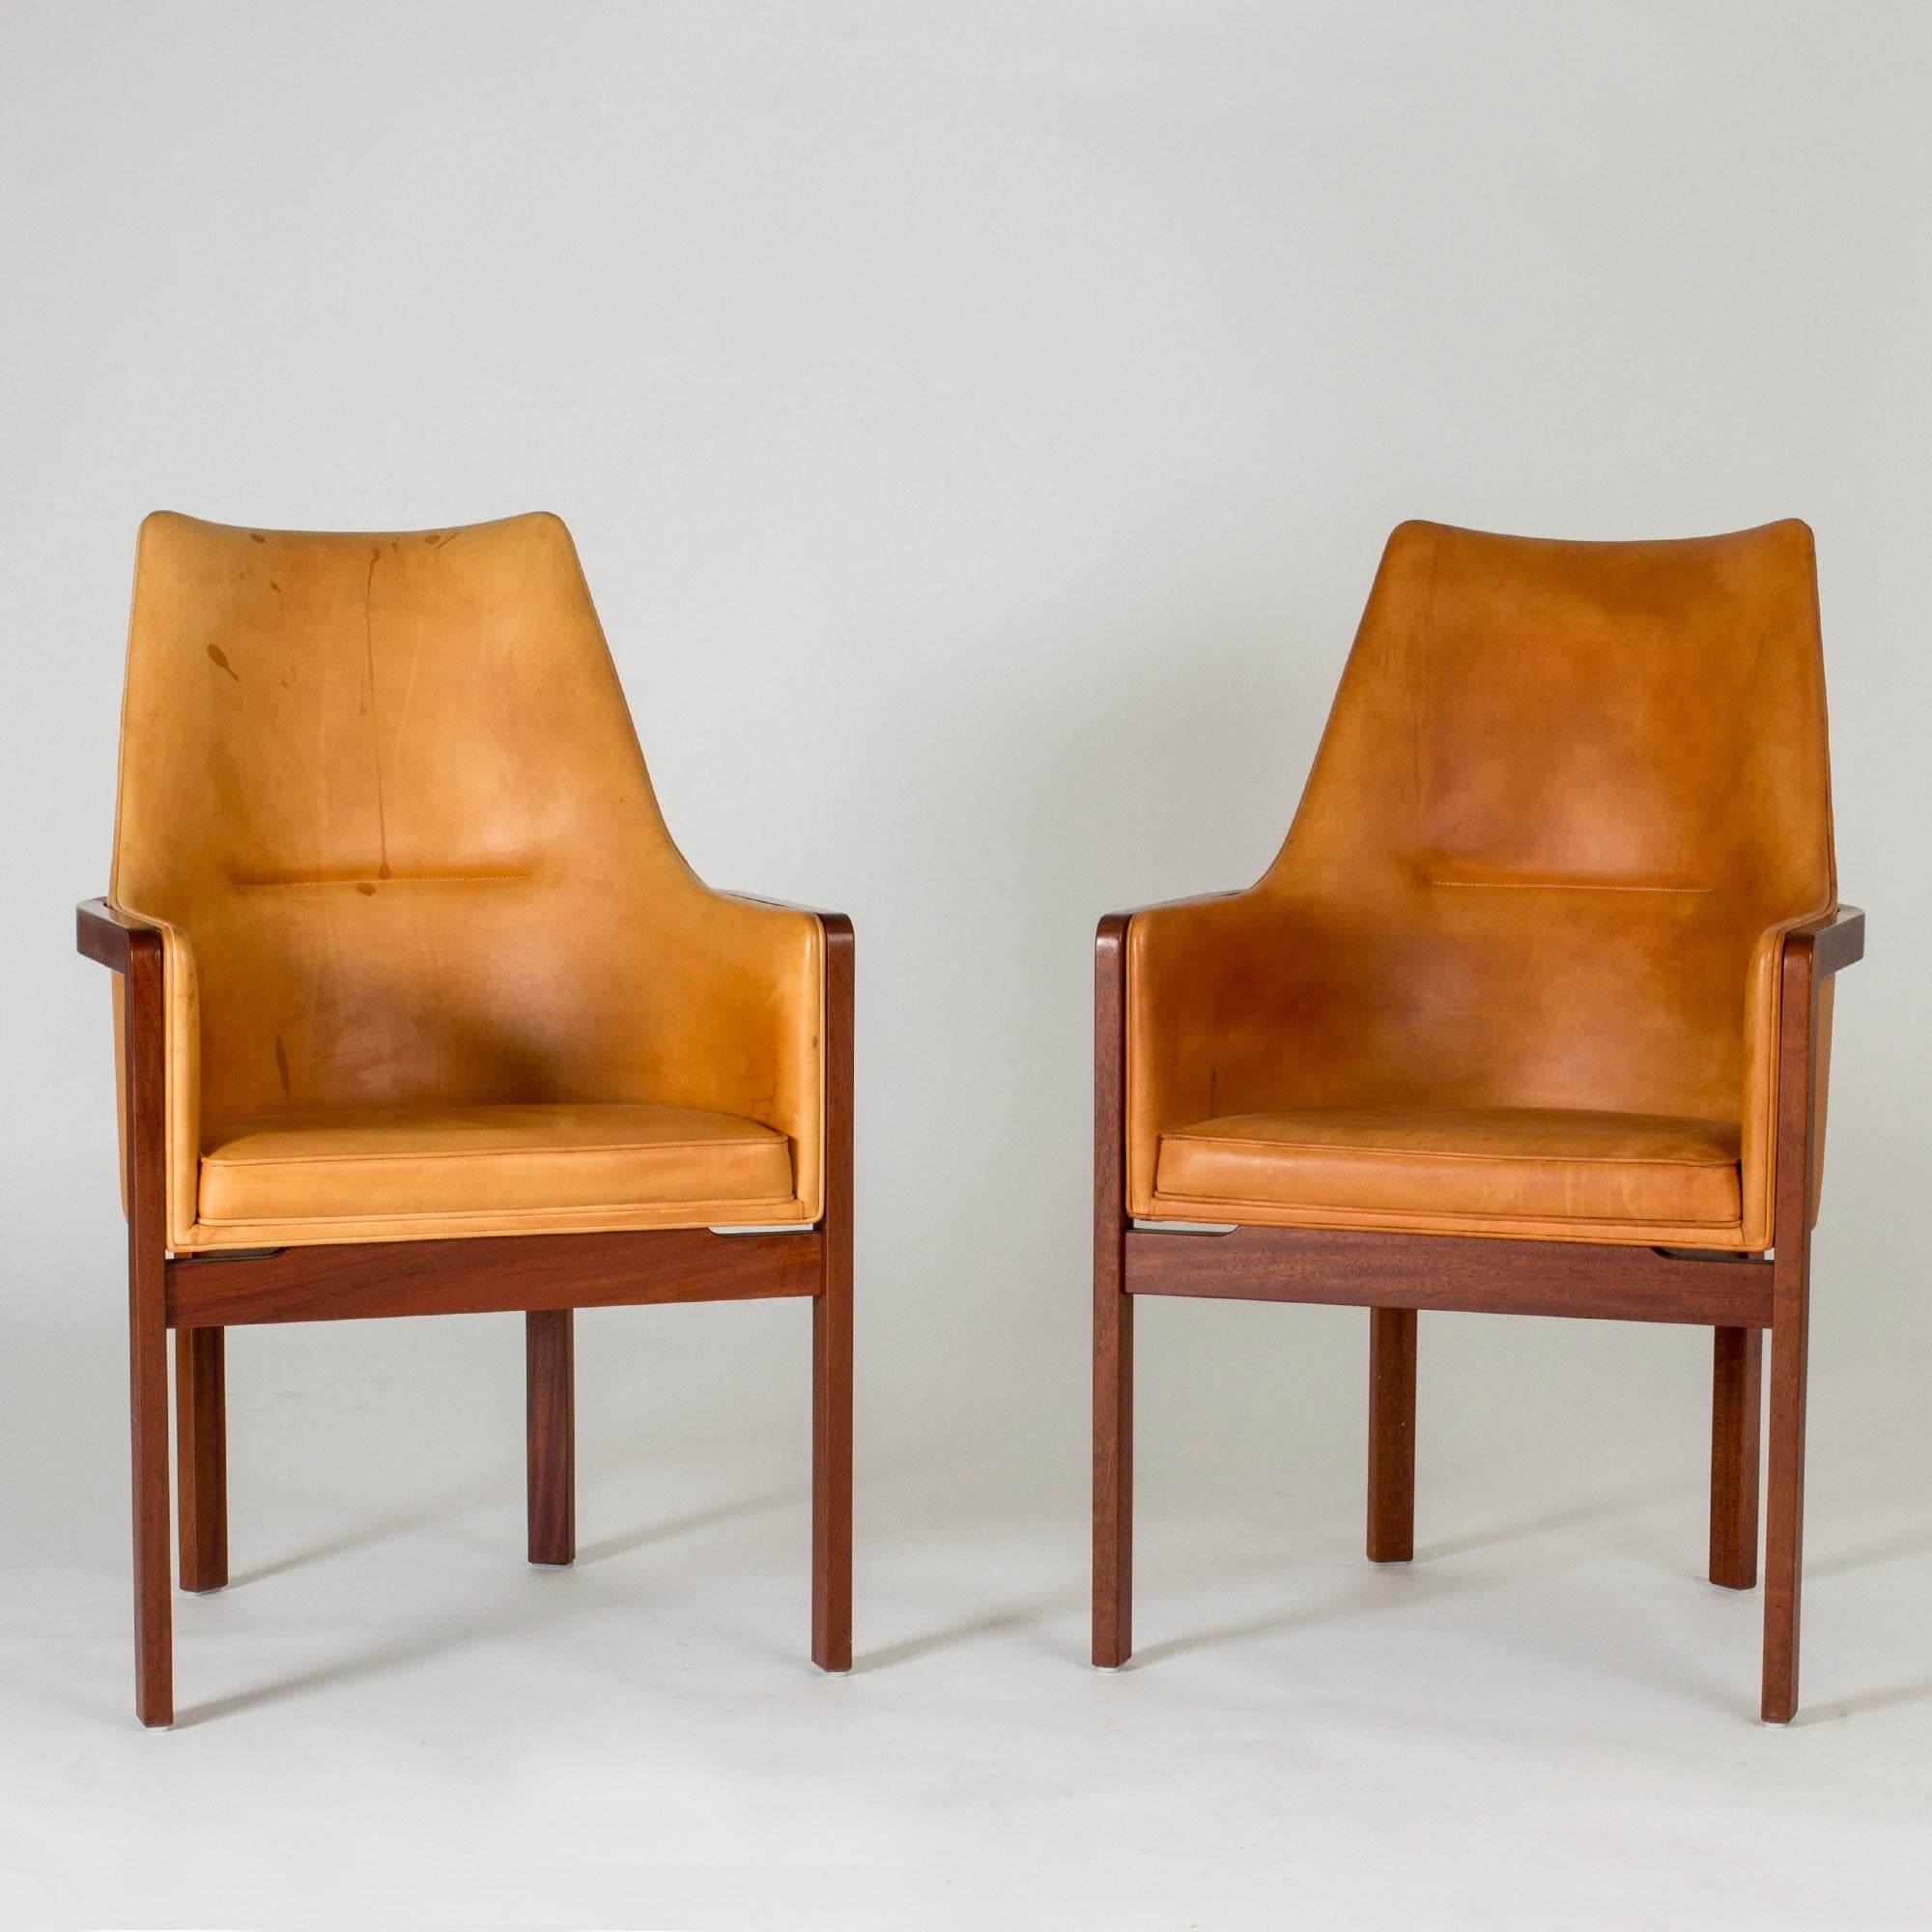 Ein Paar elegante Sessel von Bernt Petersen mit Palisanderholzrahmen und bequemen Sitzen und Rückenlehnen aus Naturleder. Glatte Linien mit schön kontrastierenden Materialien. Leder in sehr gutem Zustand, aber mit etwas Patina.